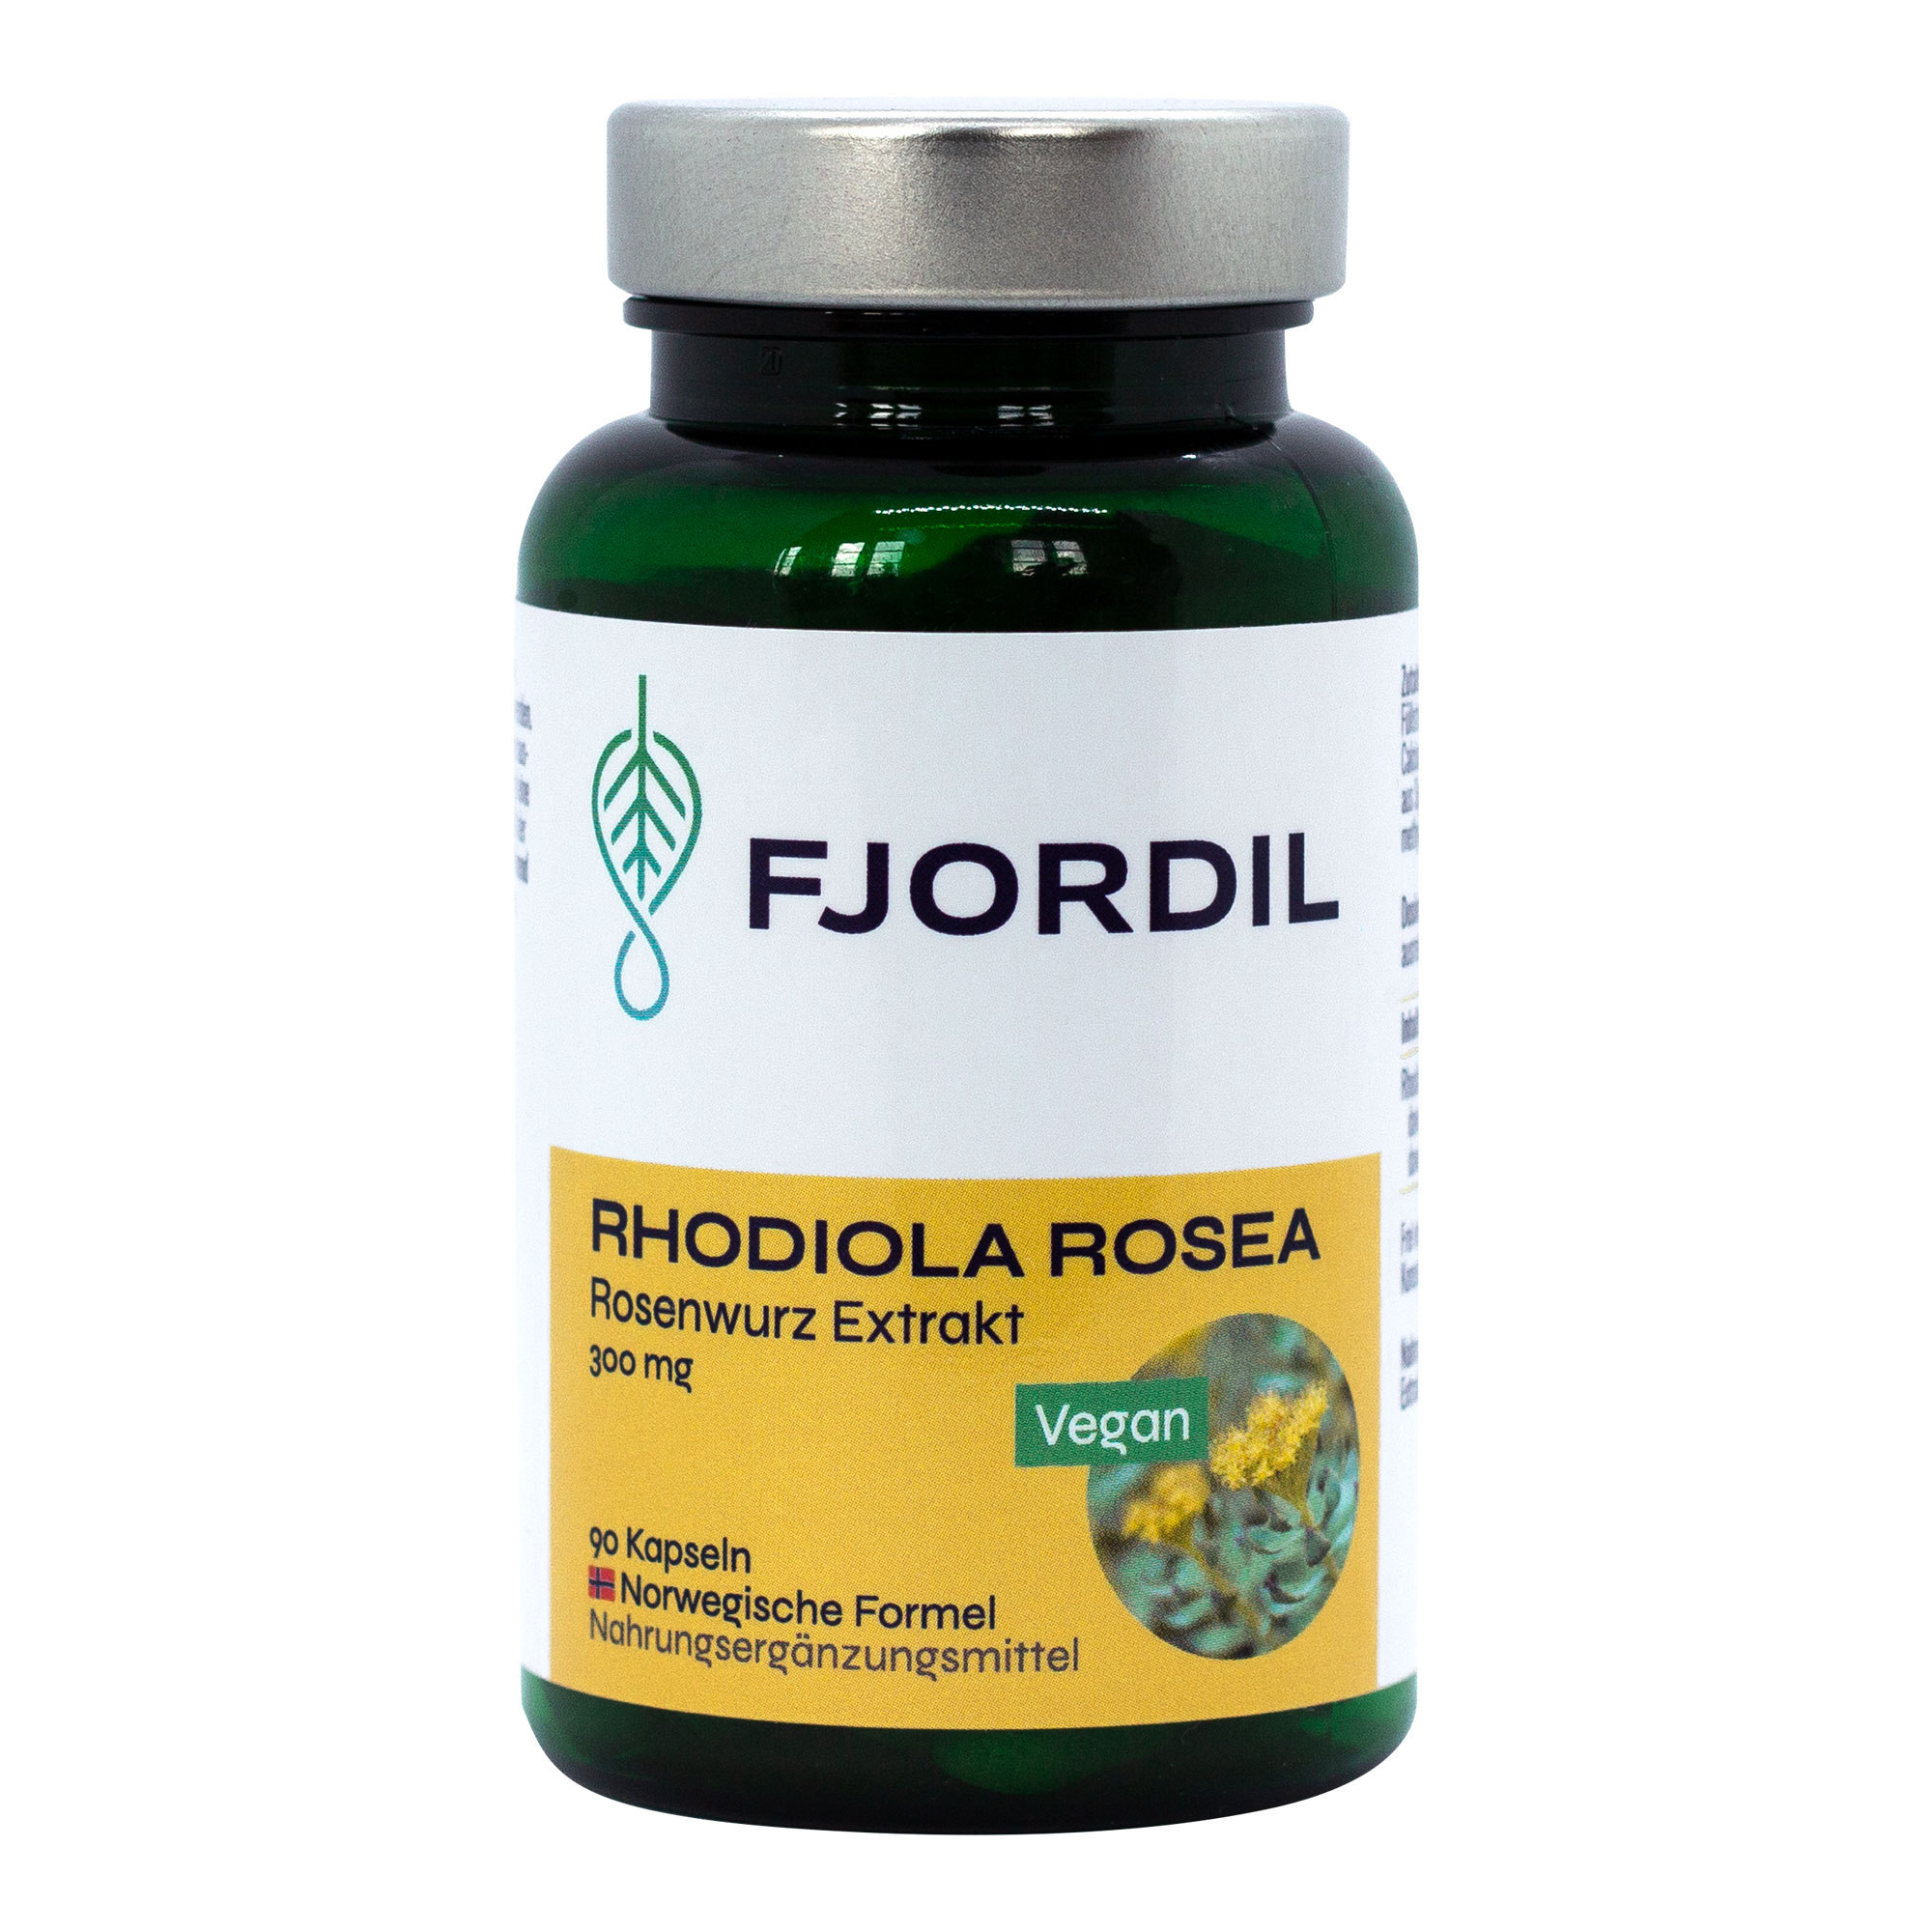 Nahrungsergänzungsmittel mit Rhodiola rosea Extrakt.